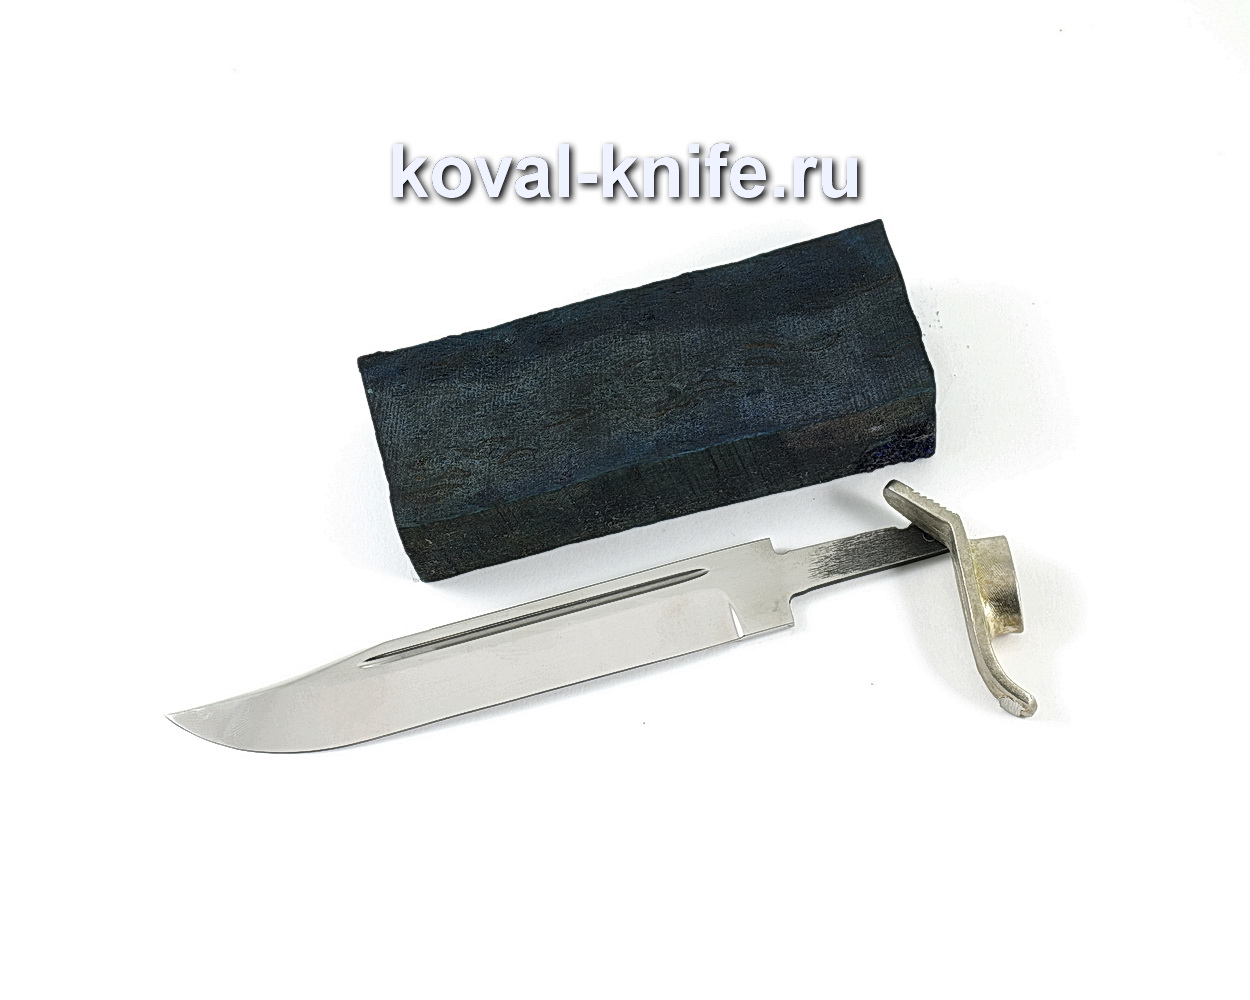 Комплект для ножа НР-40 3 (клинок кованая 95х18 3,5мм, литье 1шт., граб брусок)